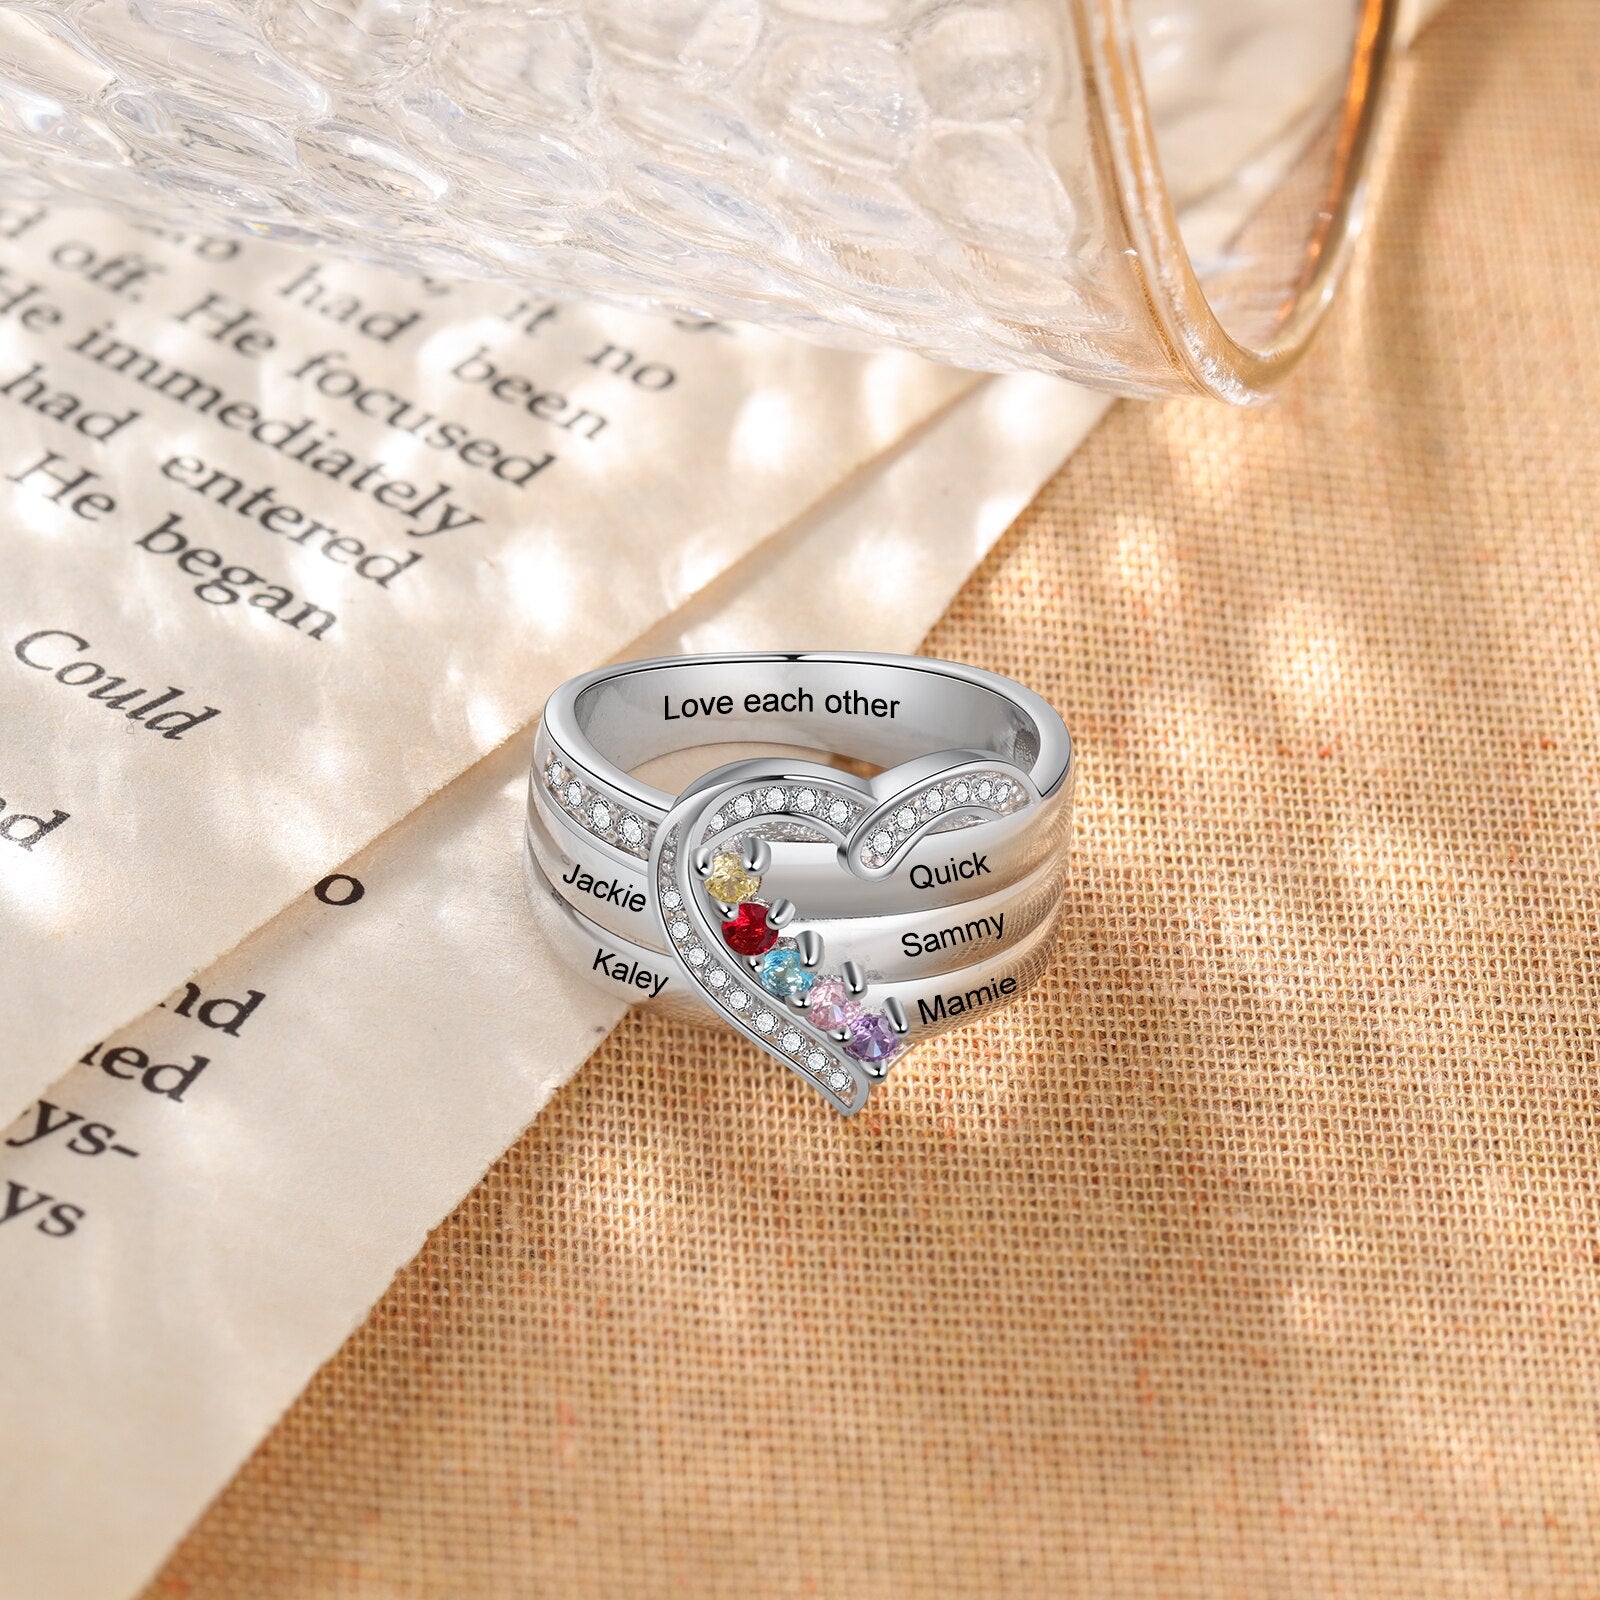 純度92.5％シルバー リング 輝くジルコン誕生石 ネーム刻印 ハート型 リング 指輪 – World-customize-store